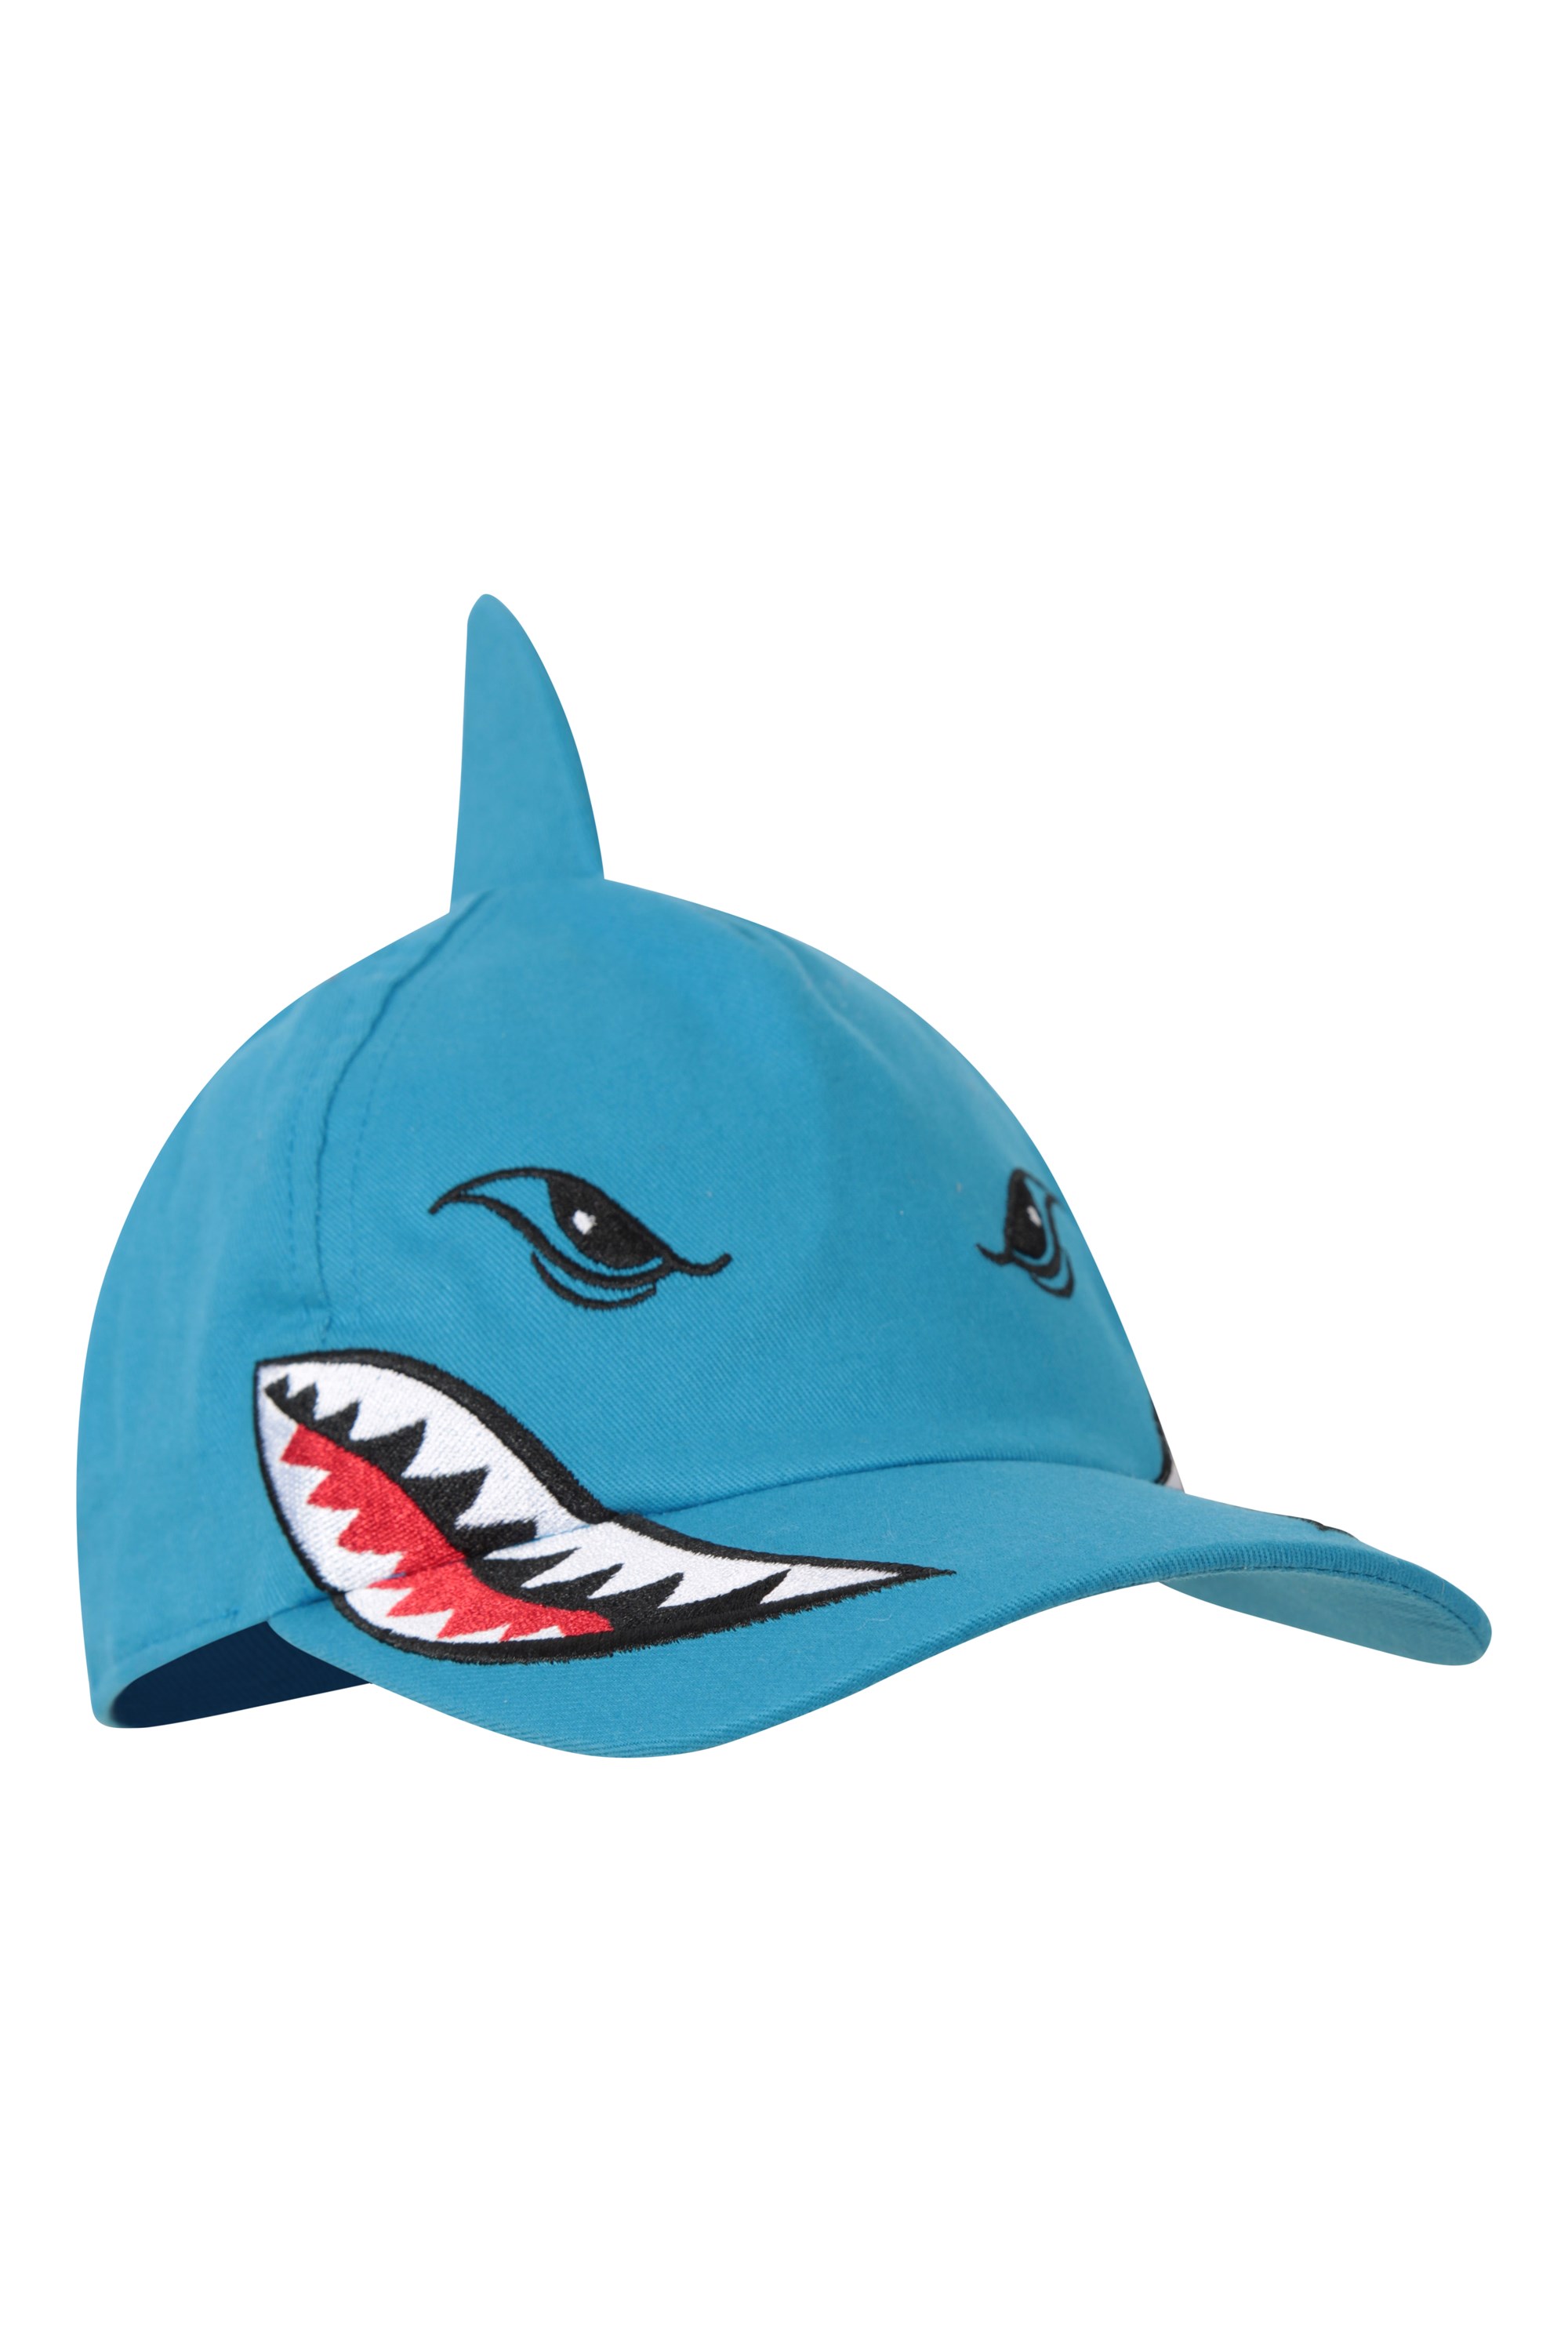 Shark Kids Baseball Cap - Blue